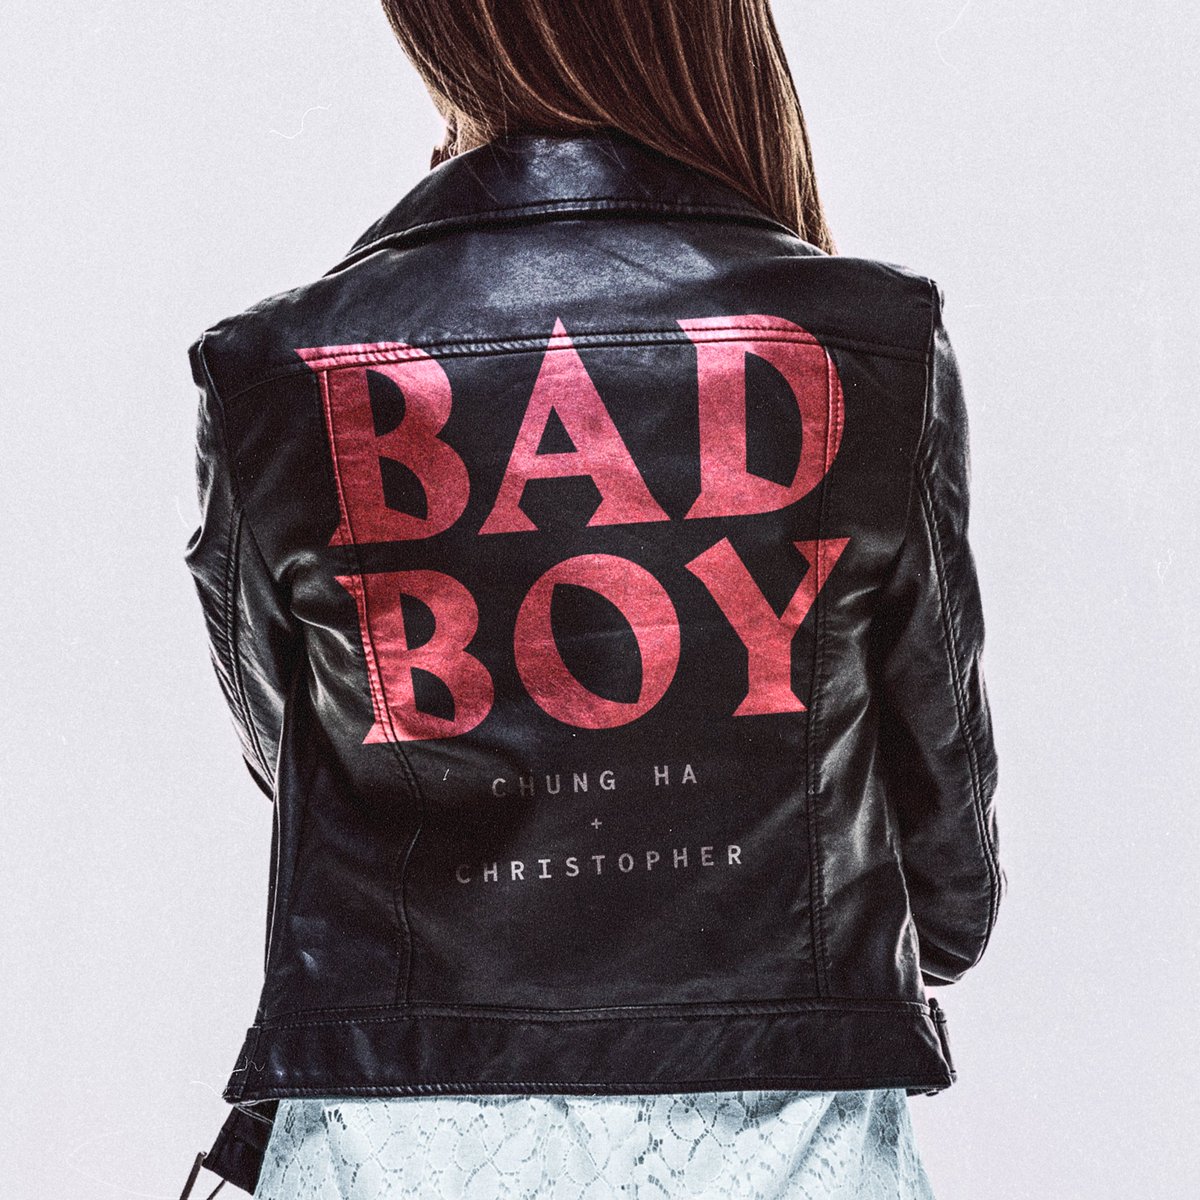 청하 CHUNG HA x 크리스토퍼 Christopher ‘Bad Boy’ 9월 23일 6시(KST)